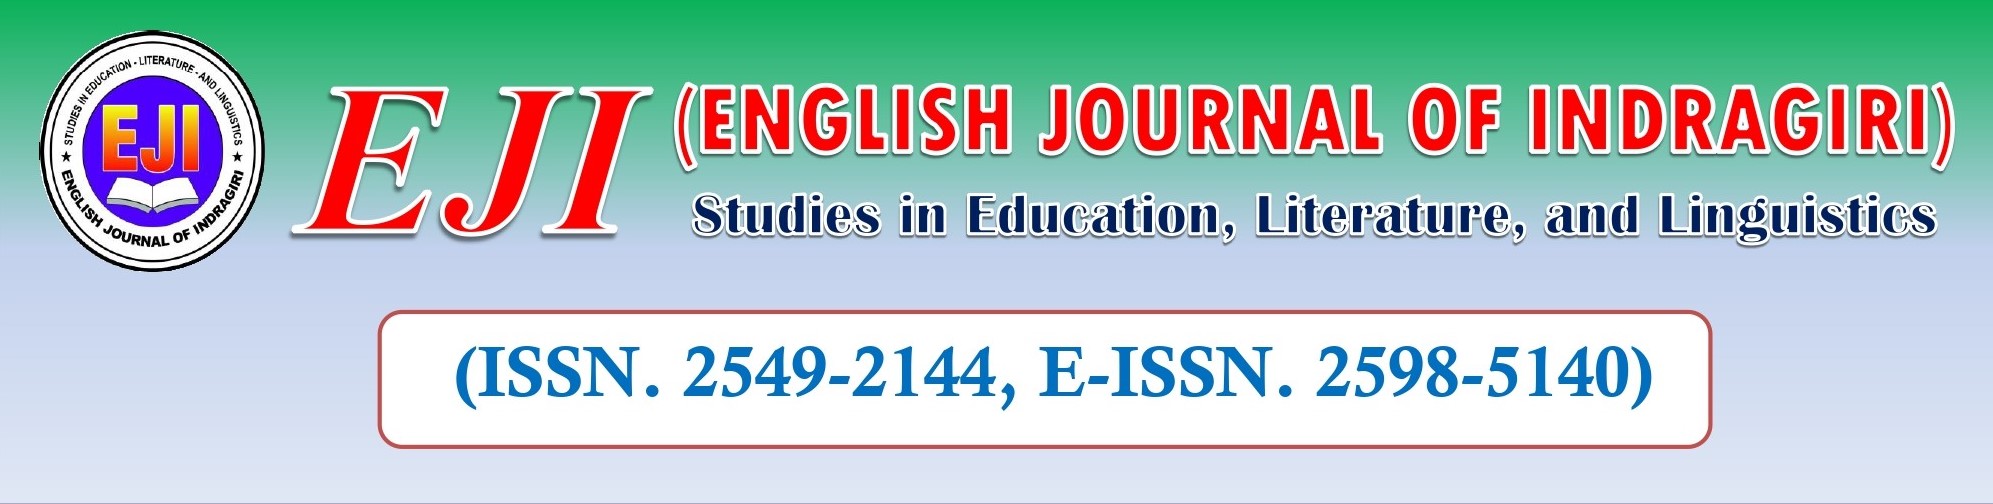 PDF) BENEFITS OF USE GOOGLE TRANSLATE IN LEARNING ENGLISH LANGUAGE: ENGLISH  EDUCATION STUDENTS UIN NORTH SUMATRA